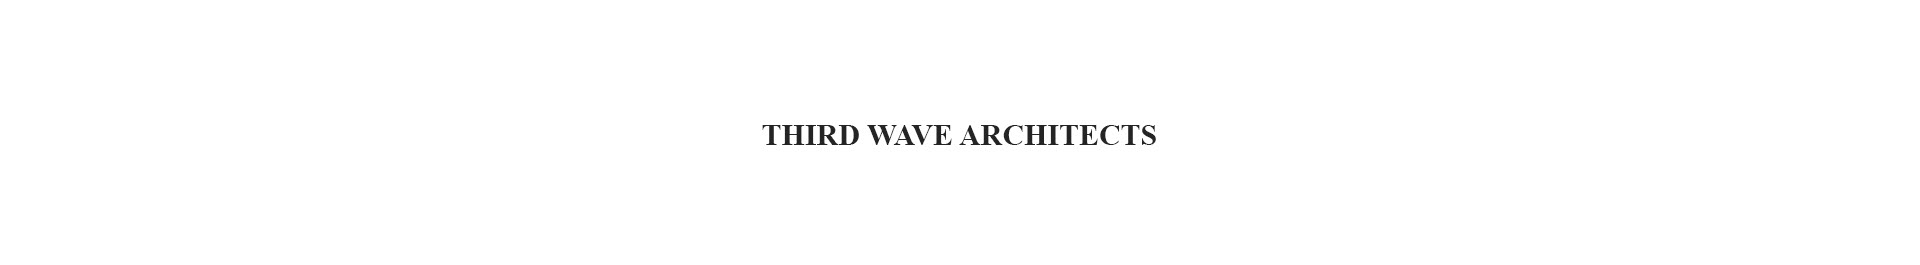 Third Wave Architects のプロファイルバナー